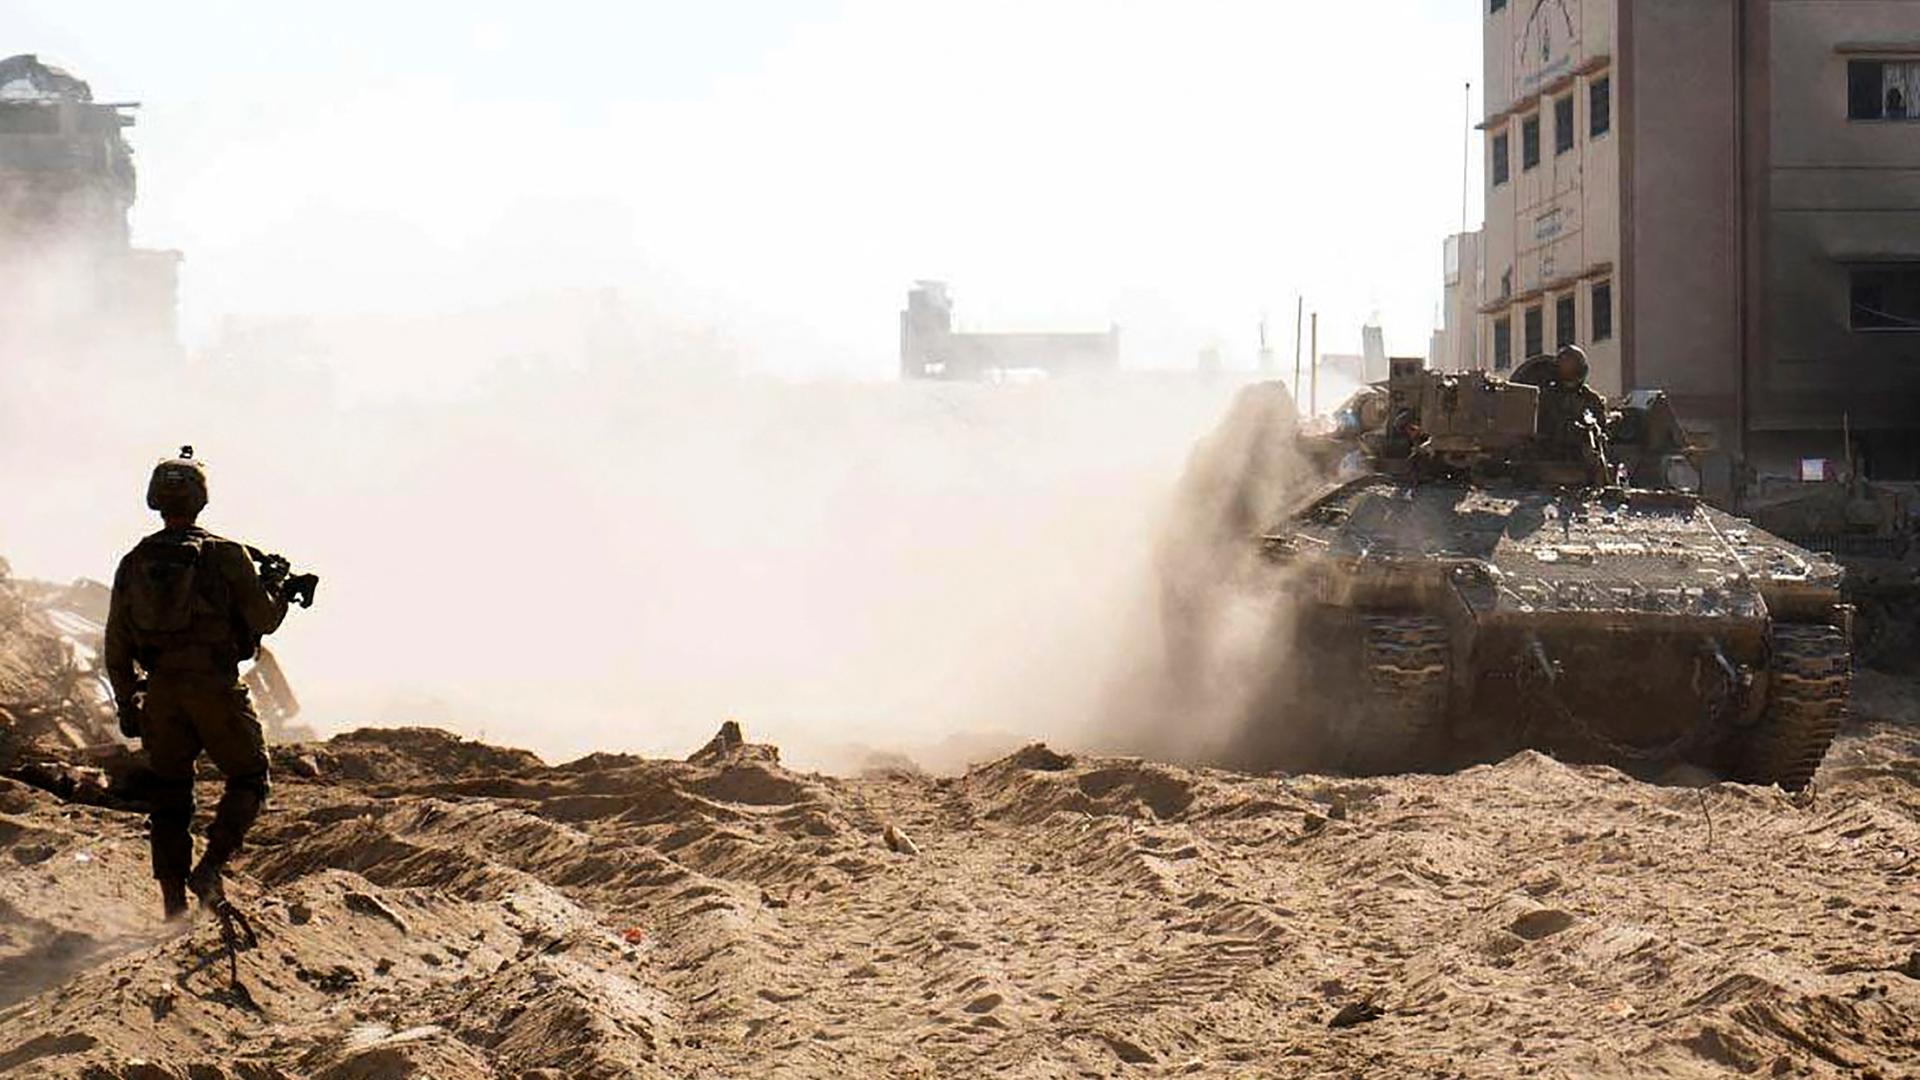 Israelische Truppen im Gazastreifen. Zerstörte Gebäude, Qualm und ein Soldat steht im Vordergrund.